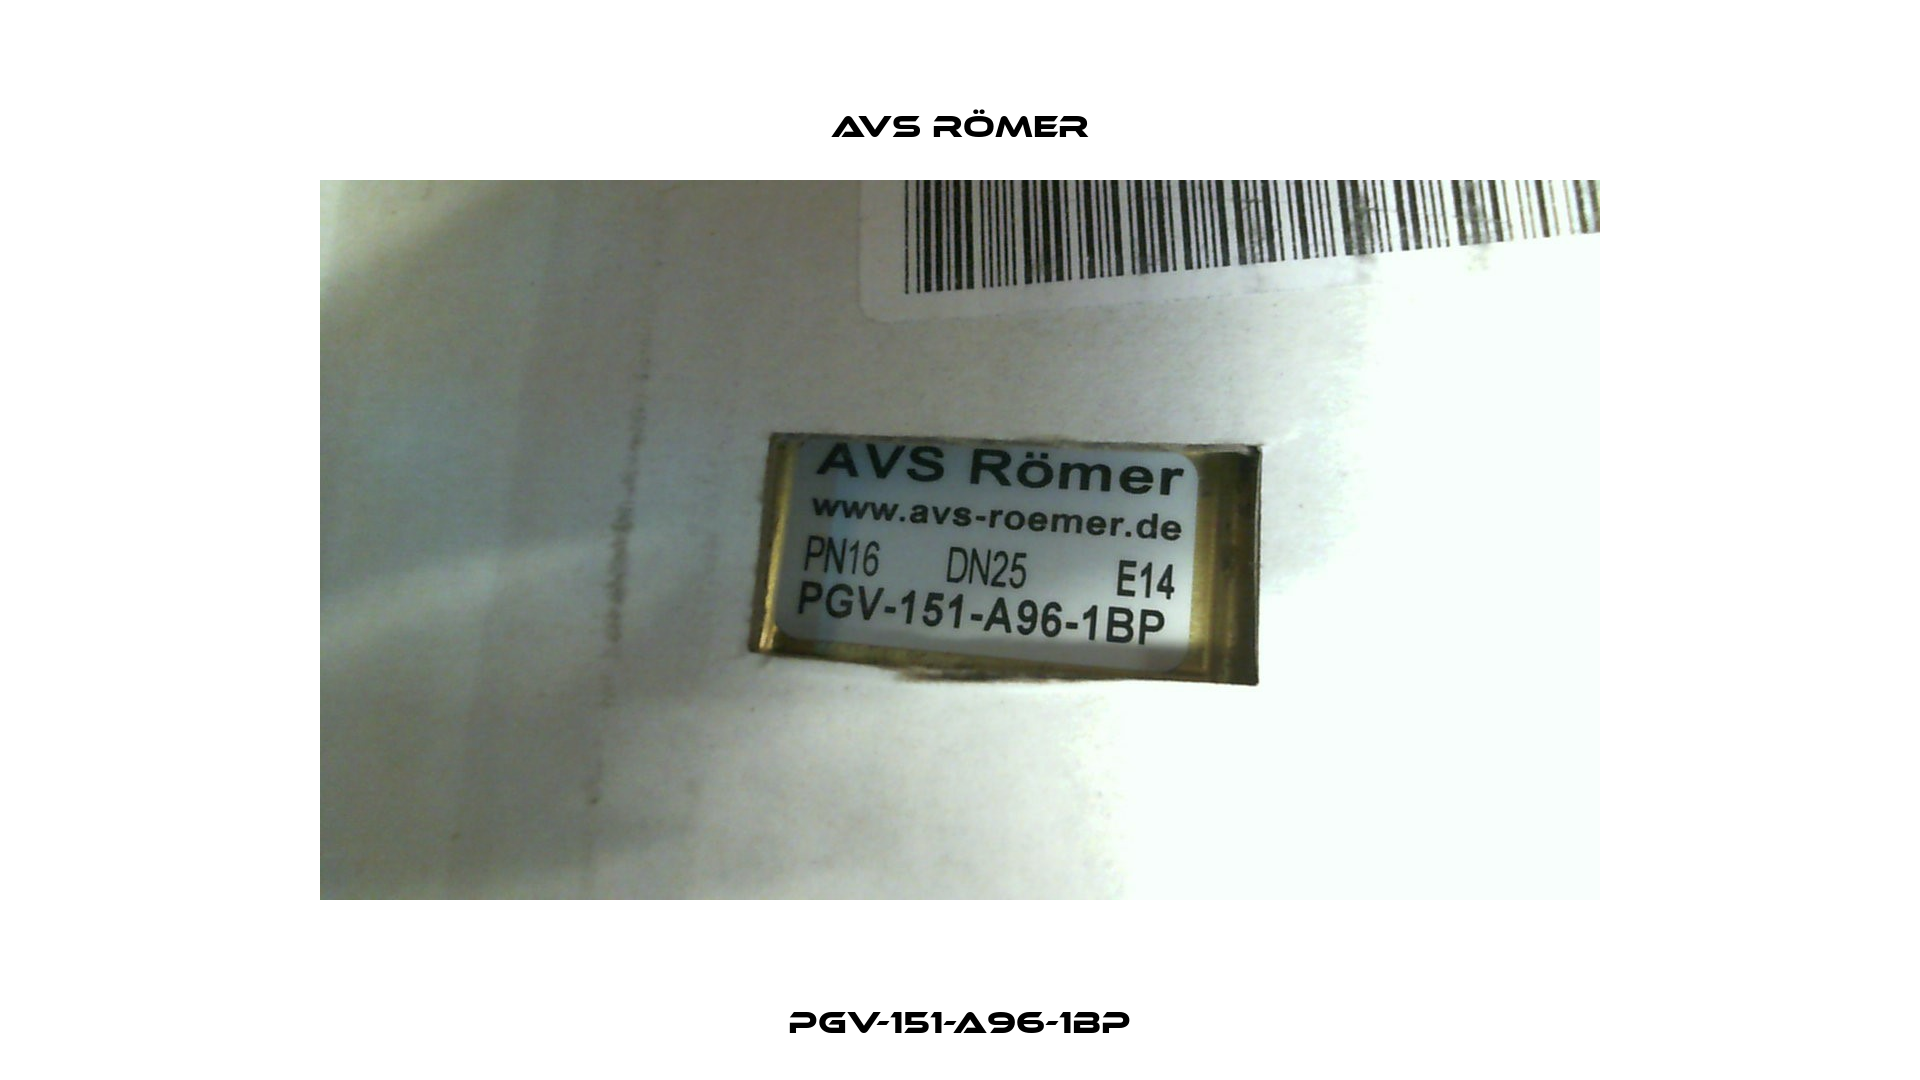 PGV-151-A96-1BP Avs Römer